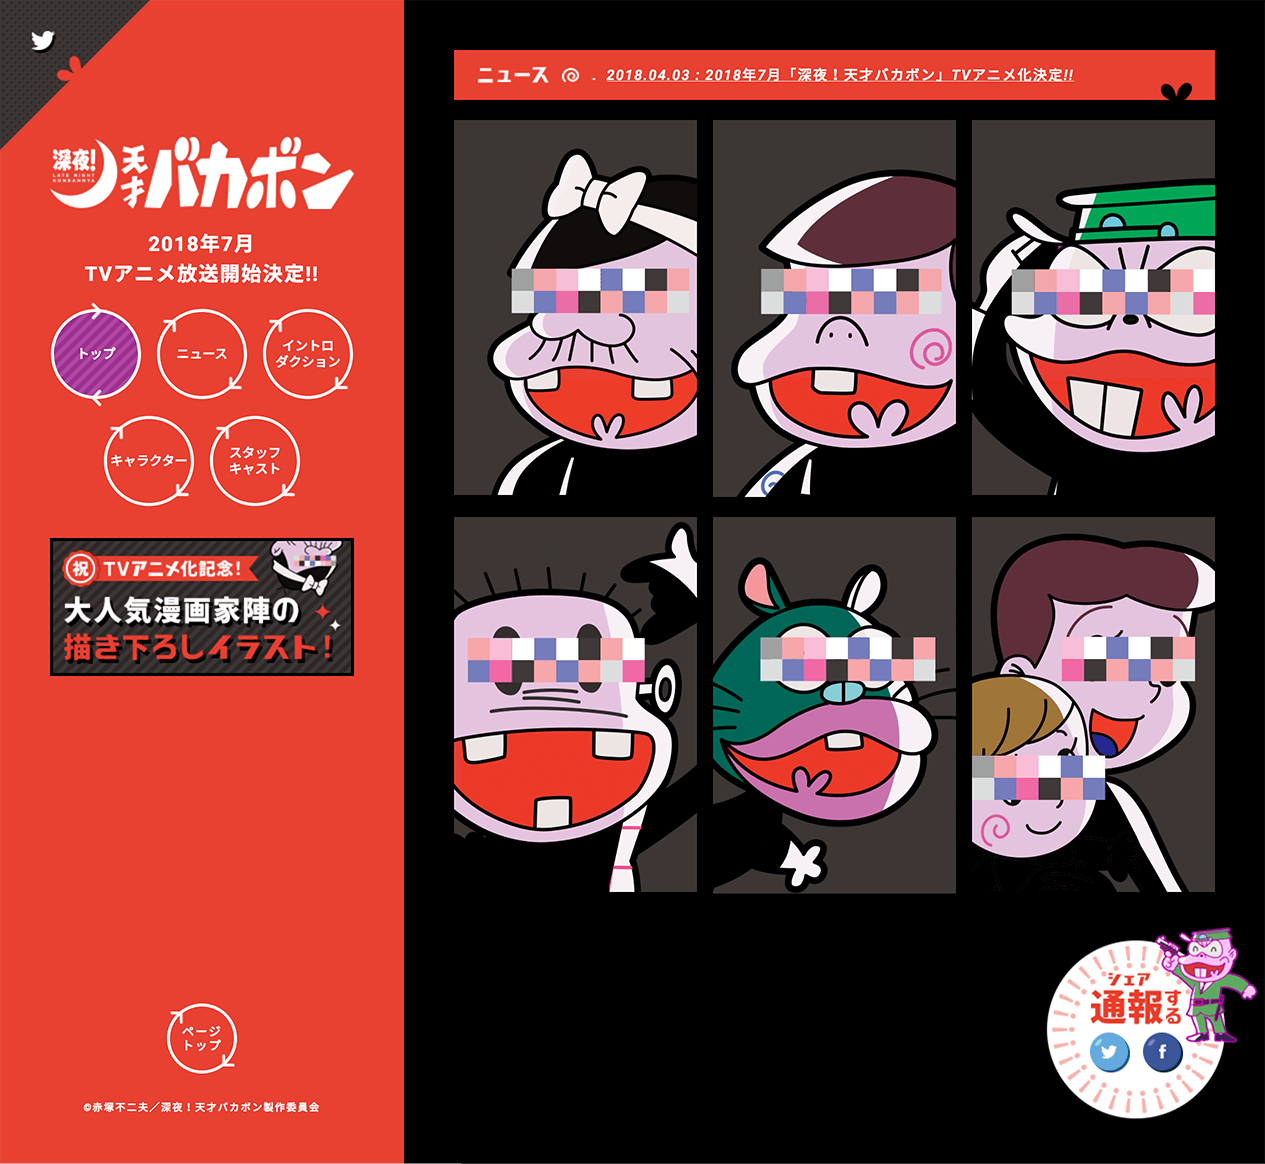 Tvアニメ 深夜 天才バカボン 公式サイト Iro 2 Bookmark アニメウェブデザインまとめサイト